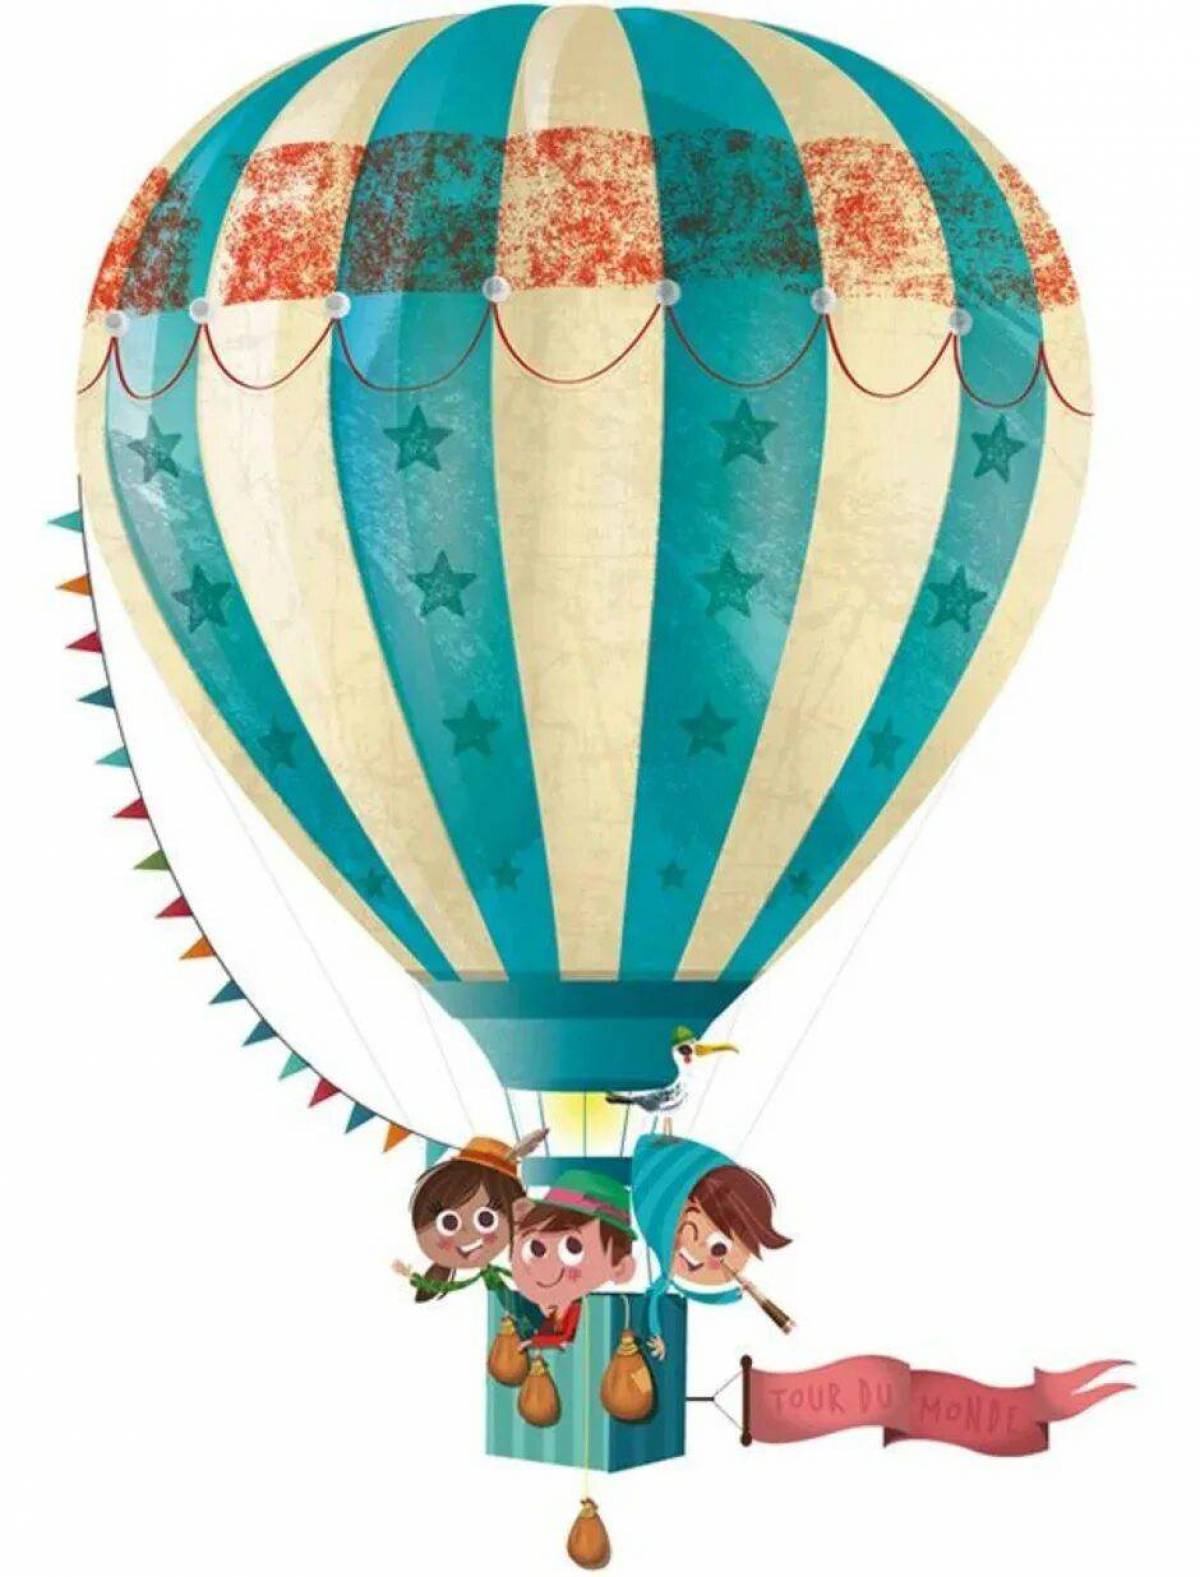 Воздушный шарик читать. Воздушный шар с корзиной. Воздушный шар детский. Vozdushnyye shar. Воздушный шар с корзиной сказочный.